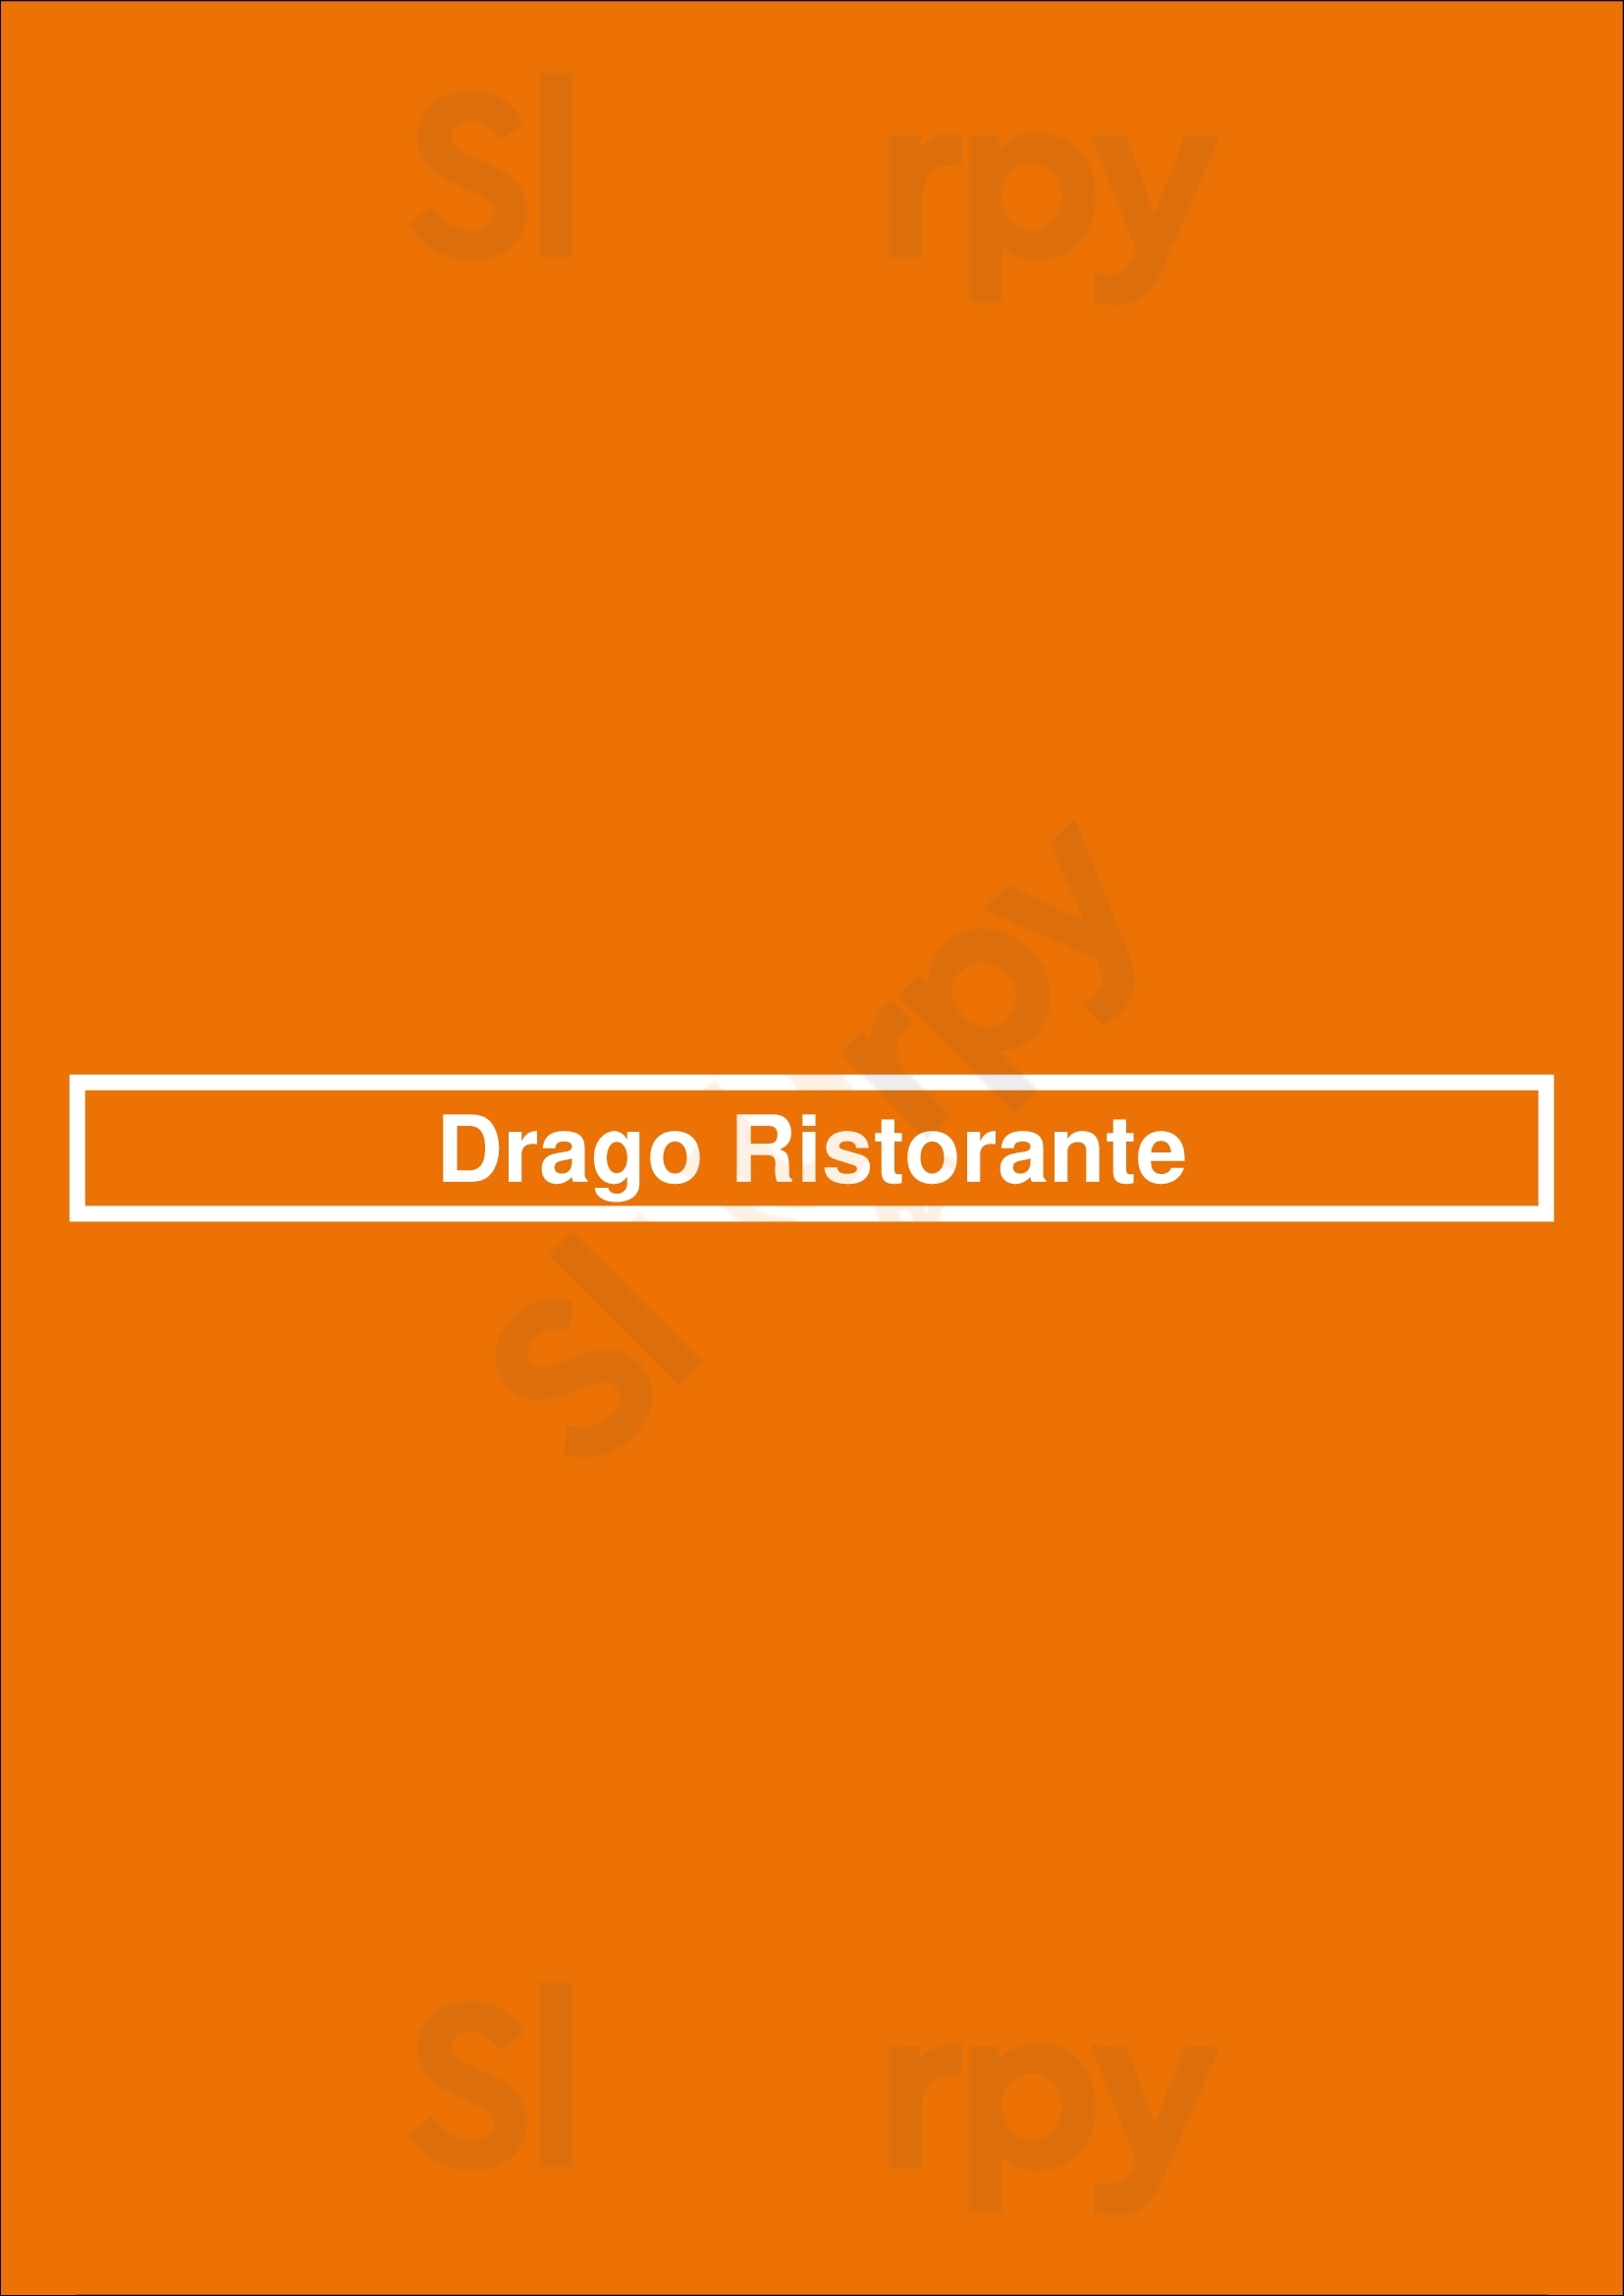 Drago Ristorante Los Angeles Menu - 1